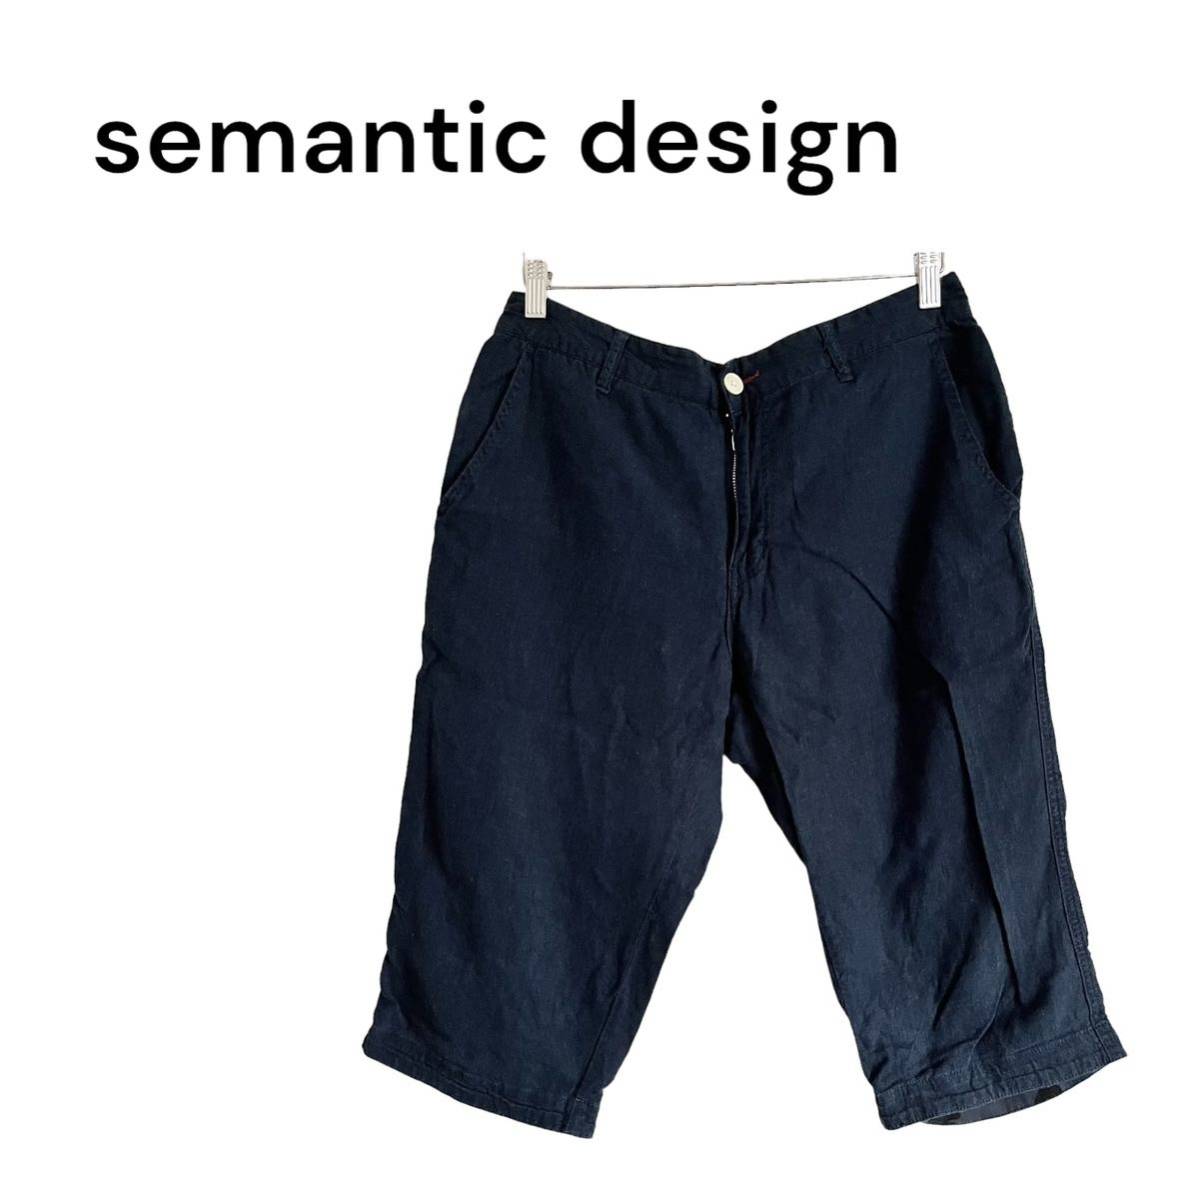 semantic design セマンティックデザイン ハーフパンツ 麻混 パンツ ネイビー 紺 Lの画像1